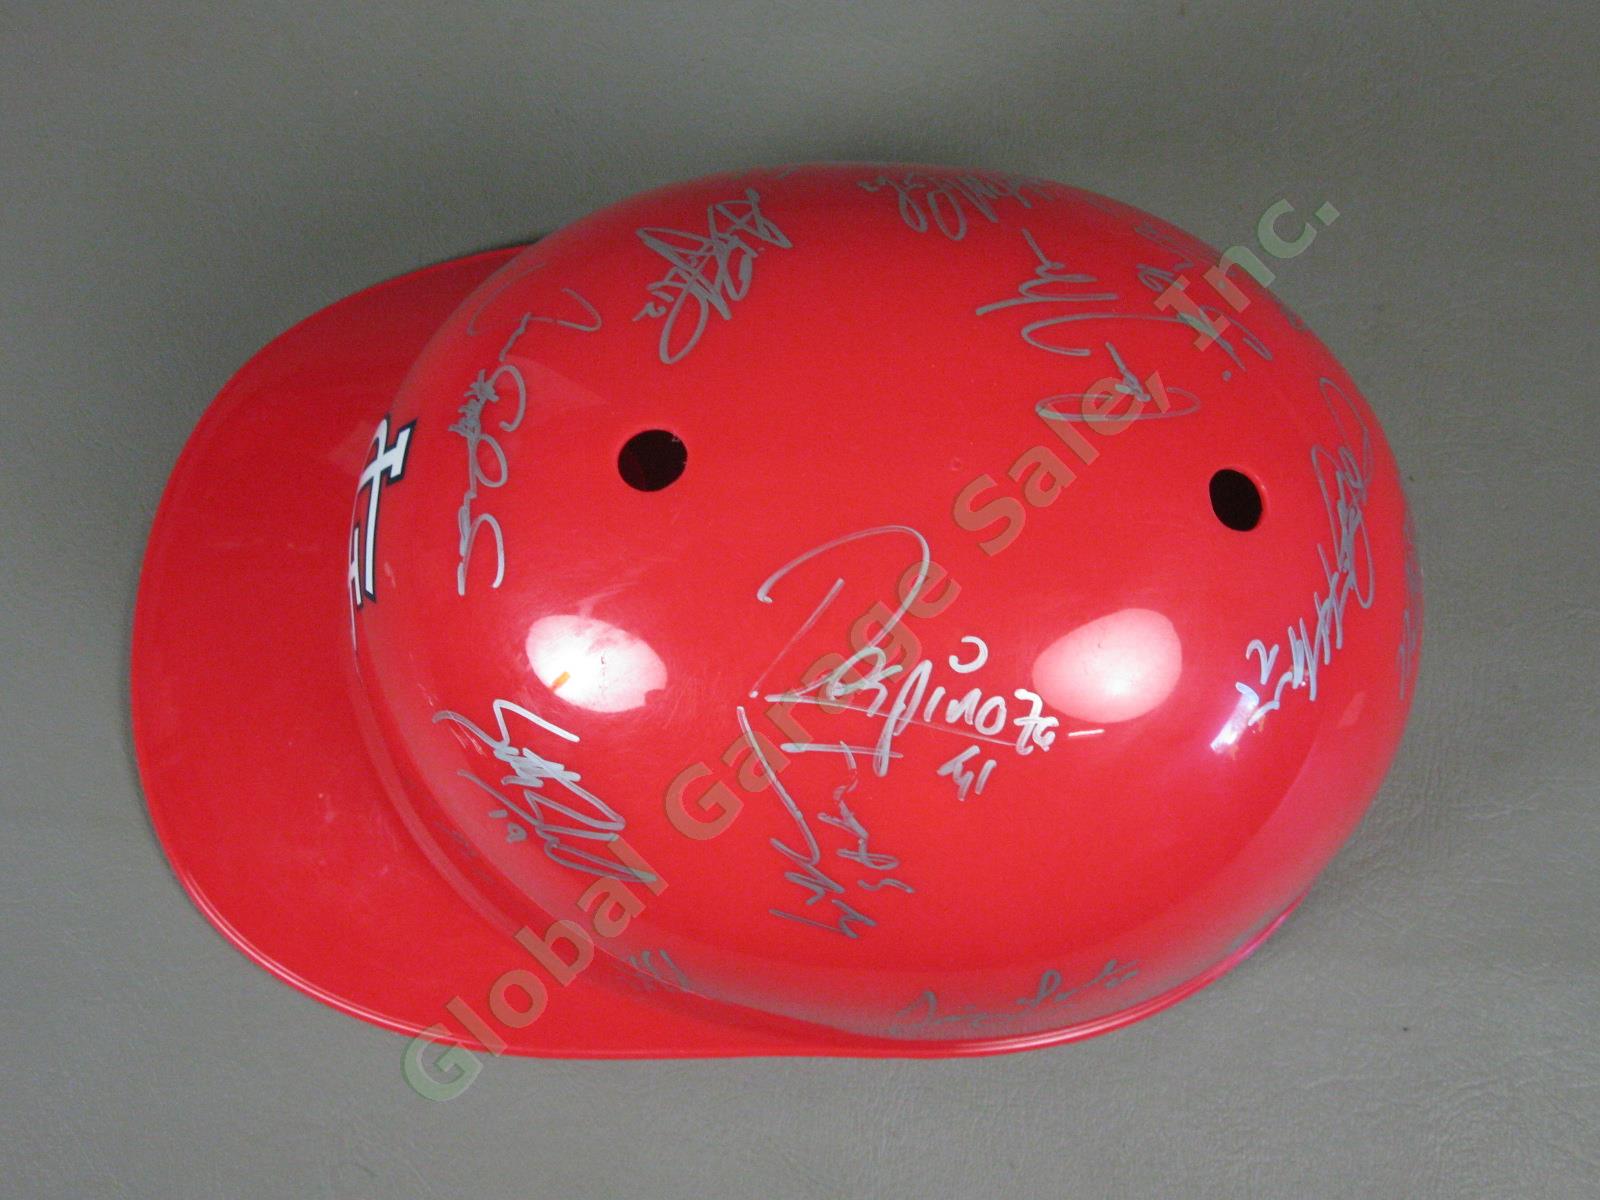 2010 Batavia Muckdogs Team Signed Baseball Helmet NYPL St. Louis Cardinals NR 4